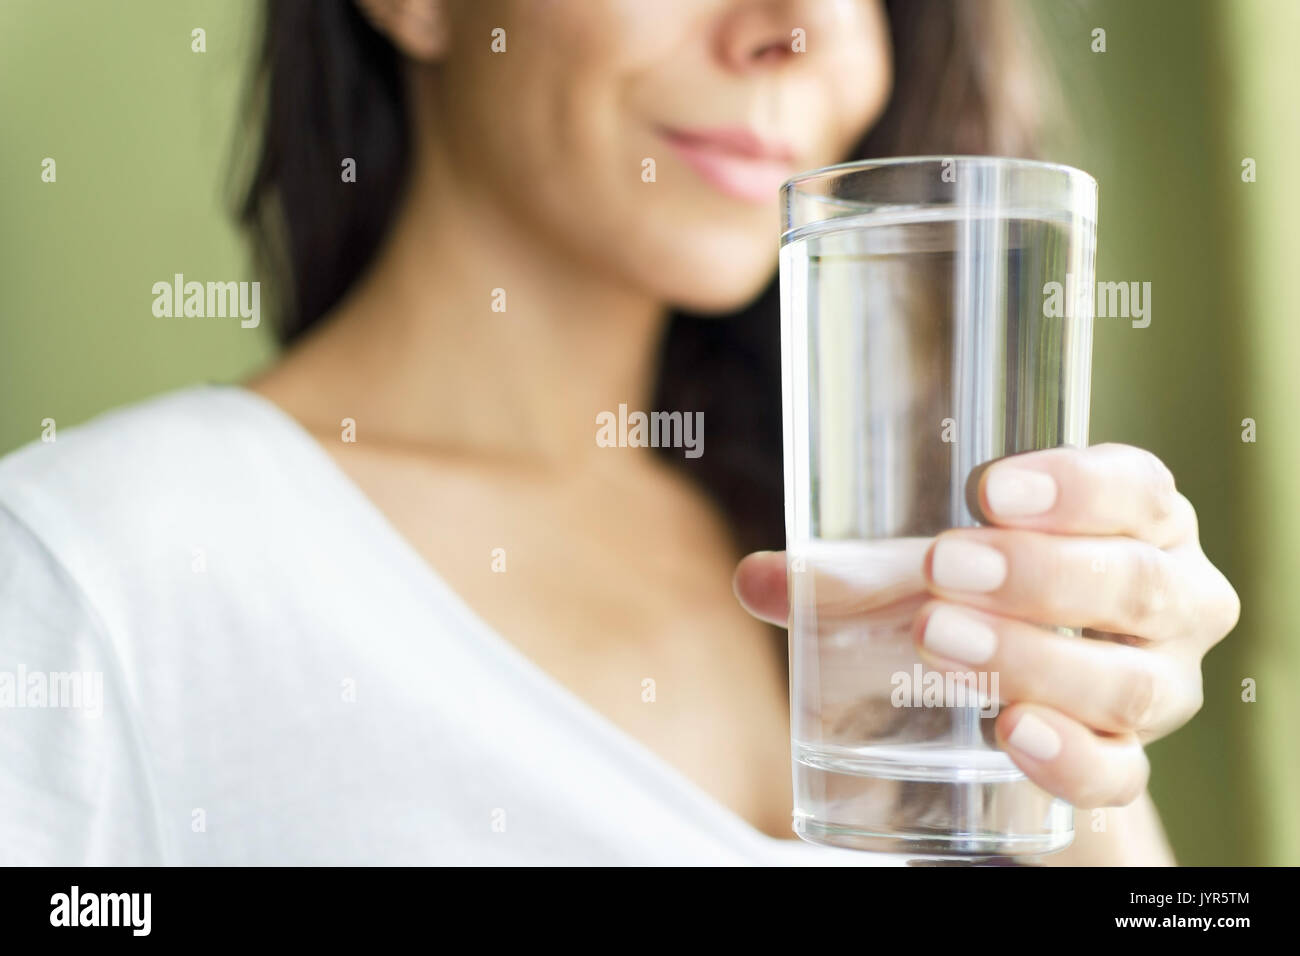 Fille floue dans un T-shirt blanc tenant un verre avec de l'eau et sourit. Fond vert Banque D'Images